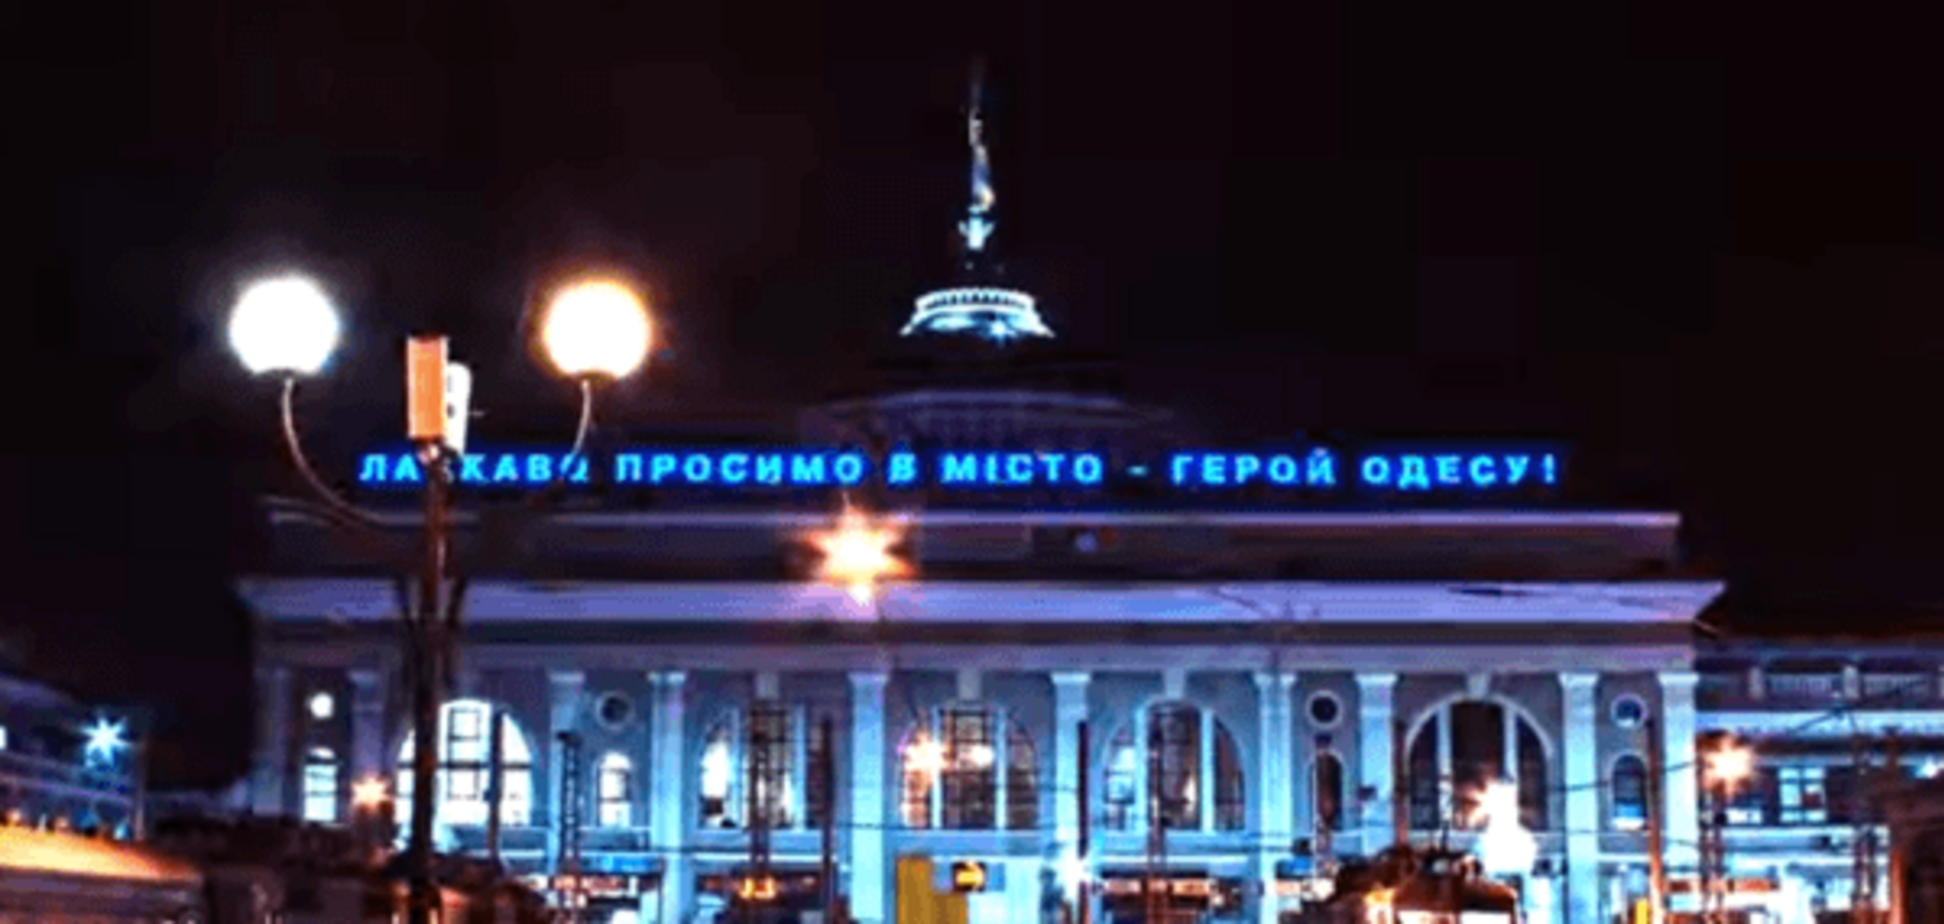 Заворожує! В мережі з'явилося яскраве відео про красу нічної Одеси